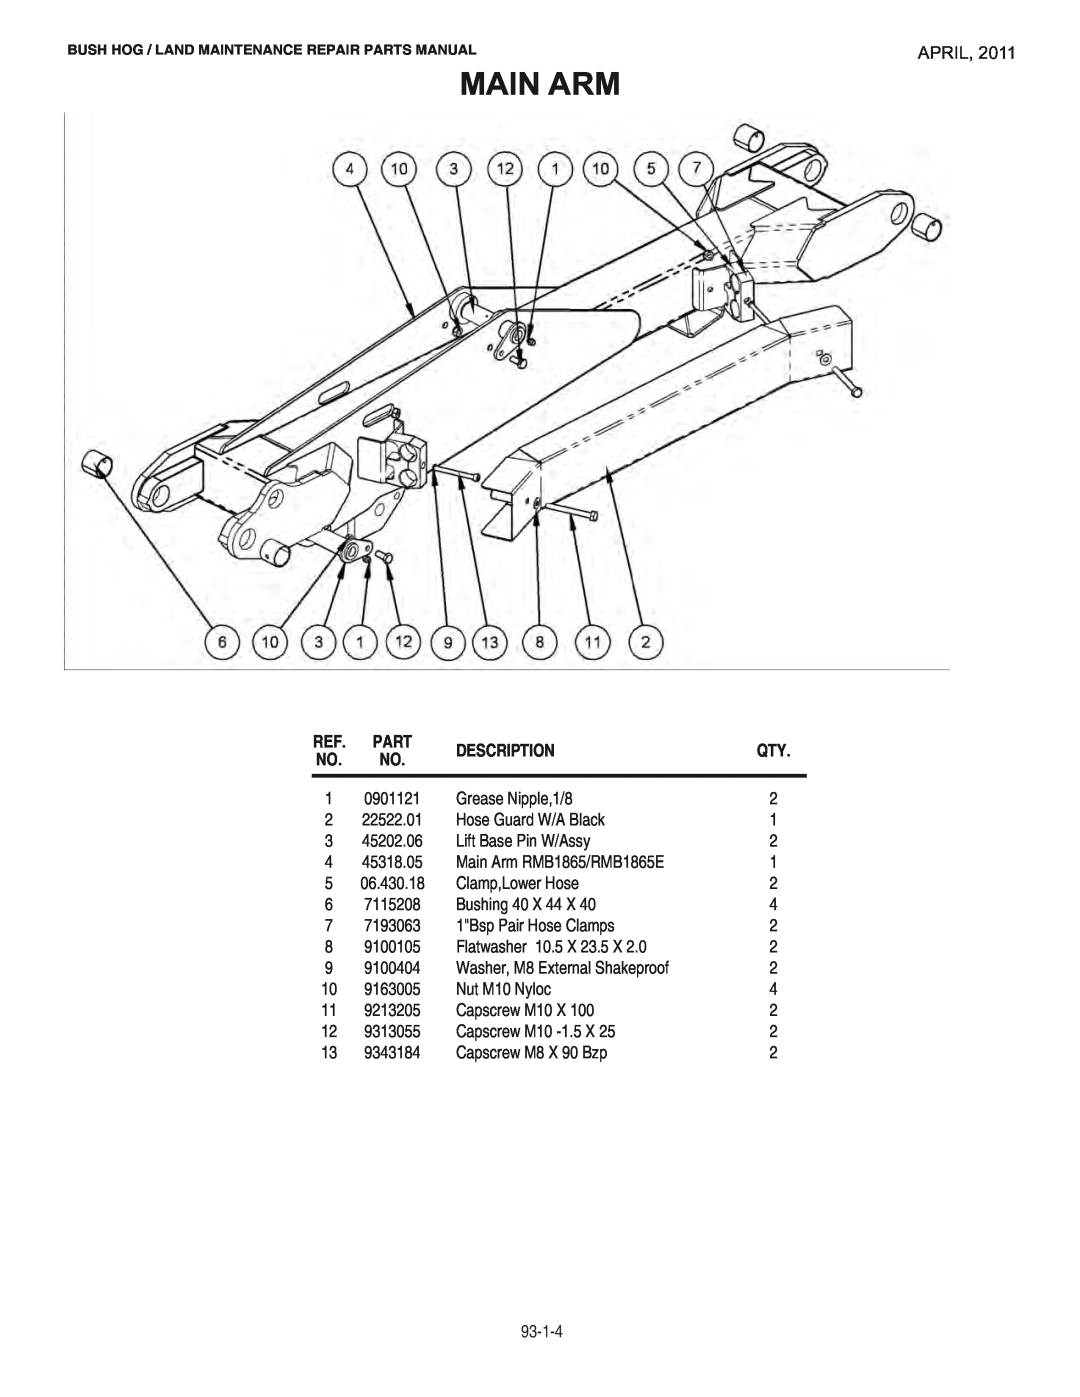 Bush Hog RMB1865E manual Main Arm, April, Description 